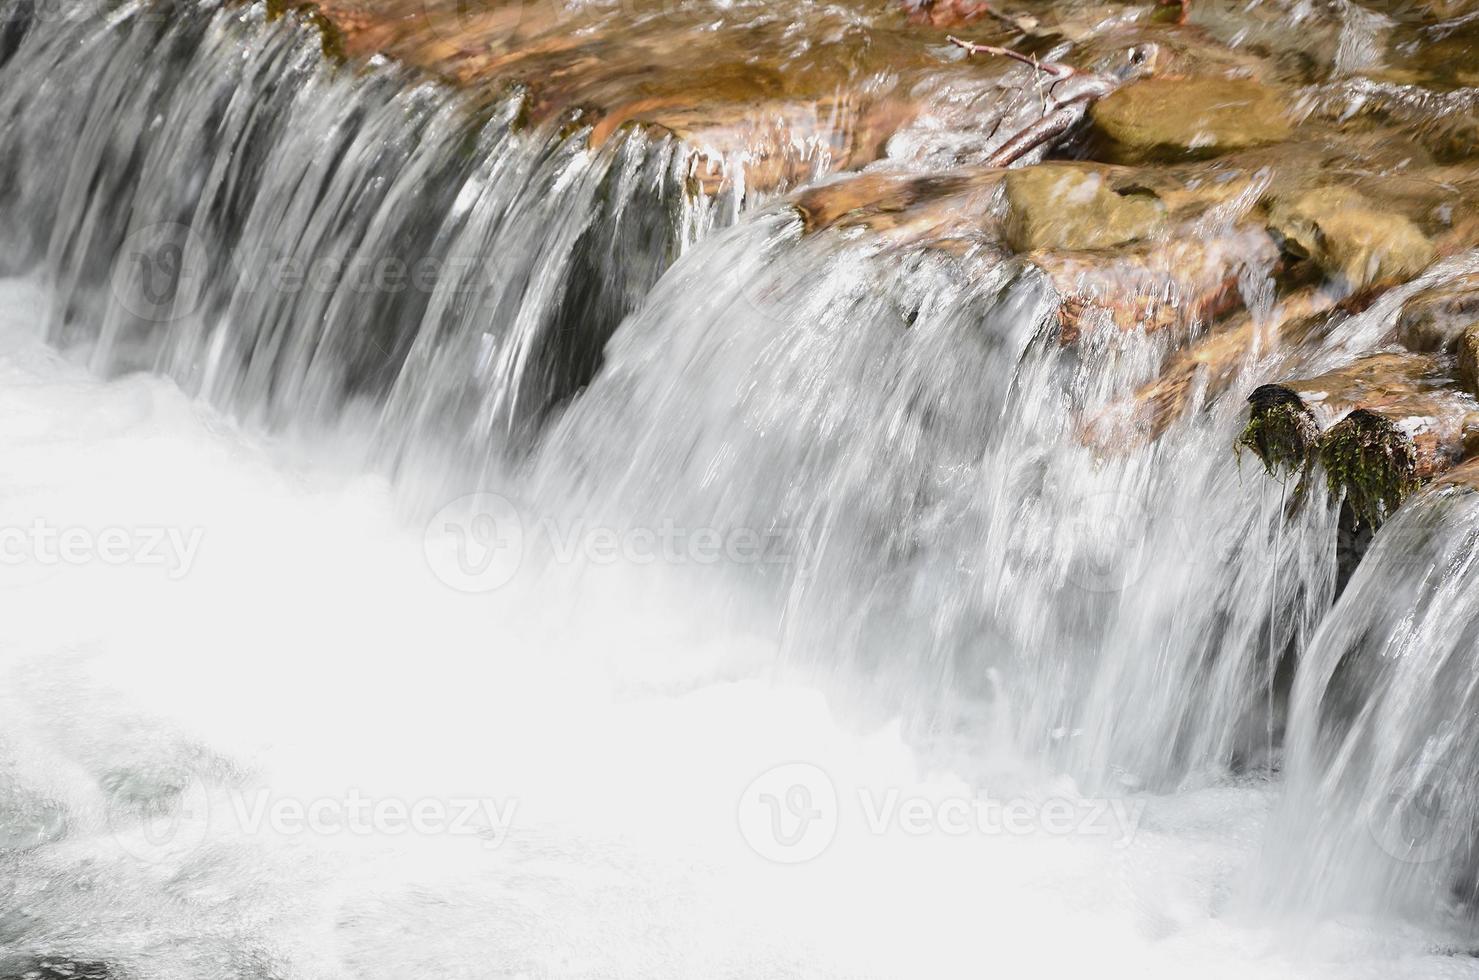 une petite cascade. la différence de hauteur du débit d'eau dans la rivière est équipée de bûches rondes en bois photo